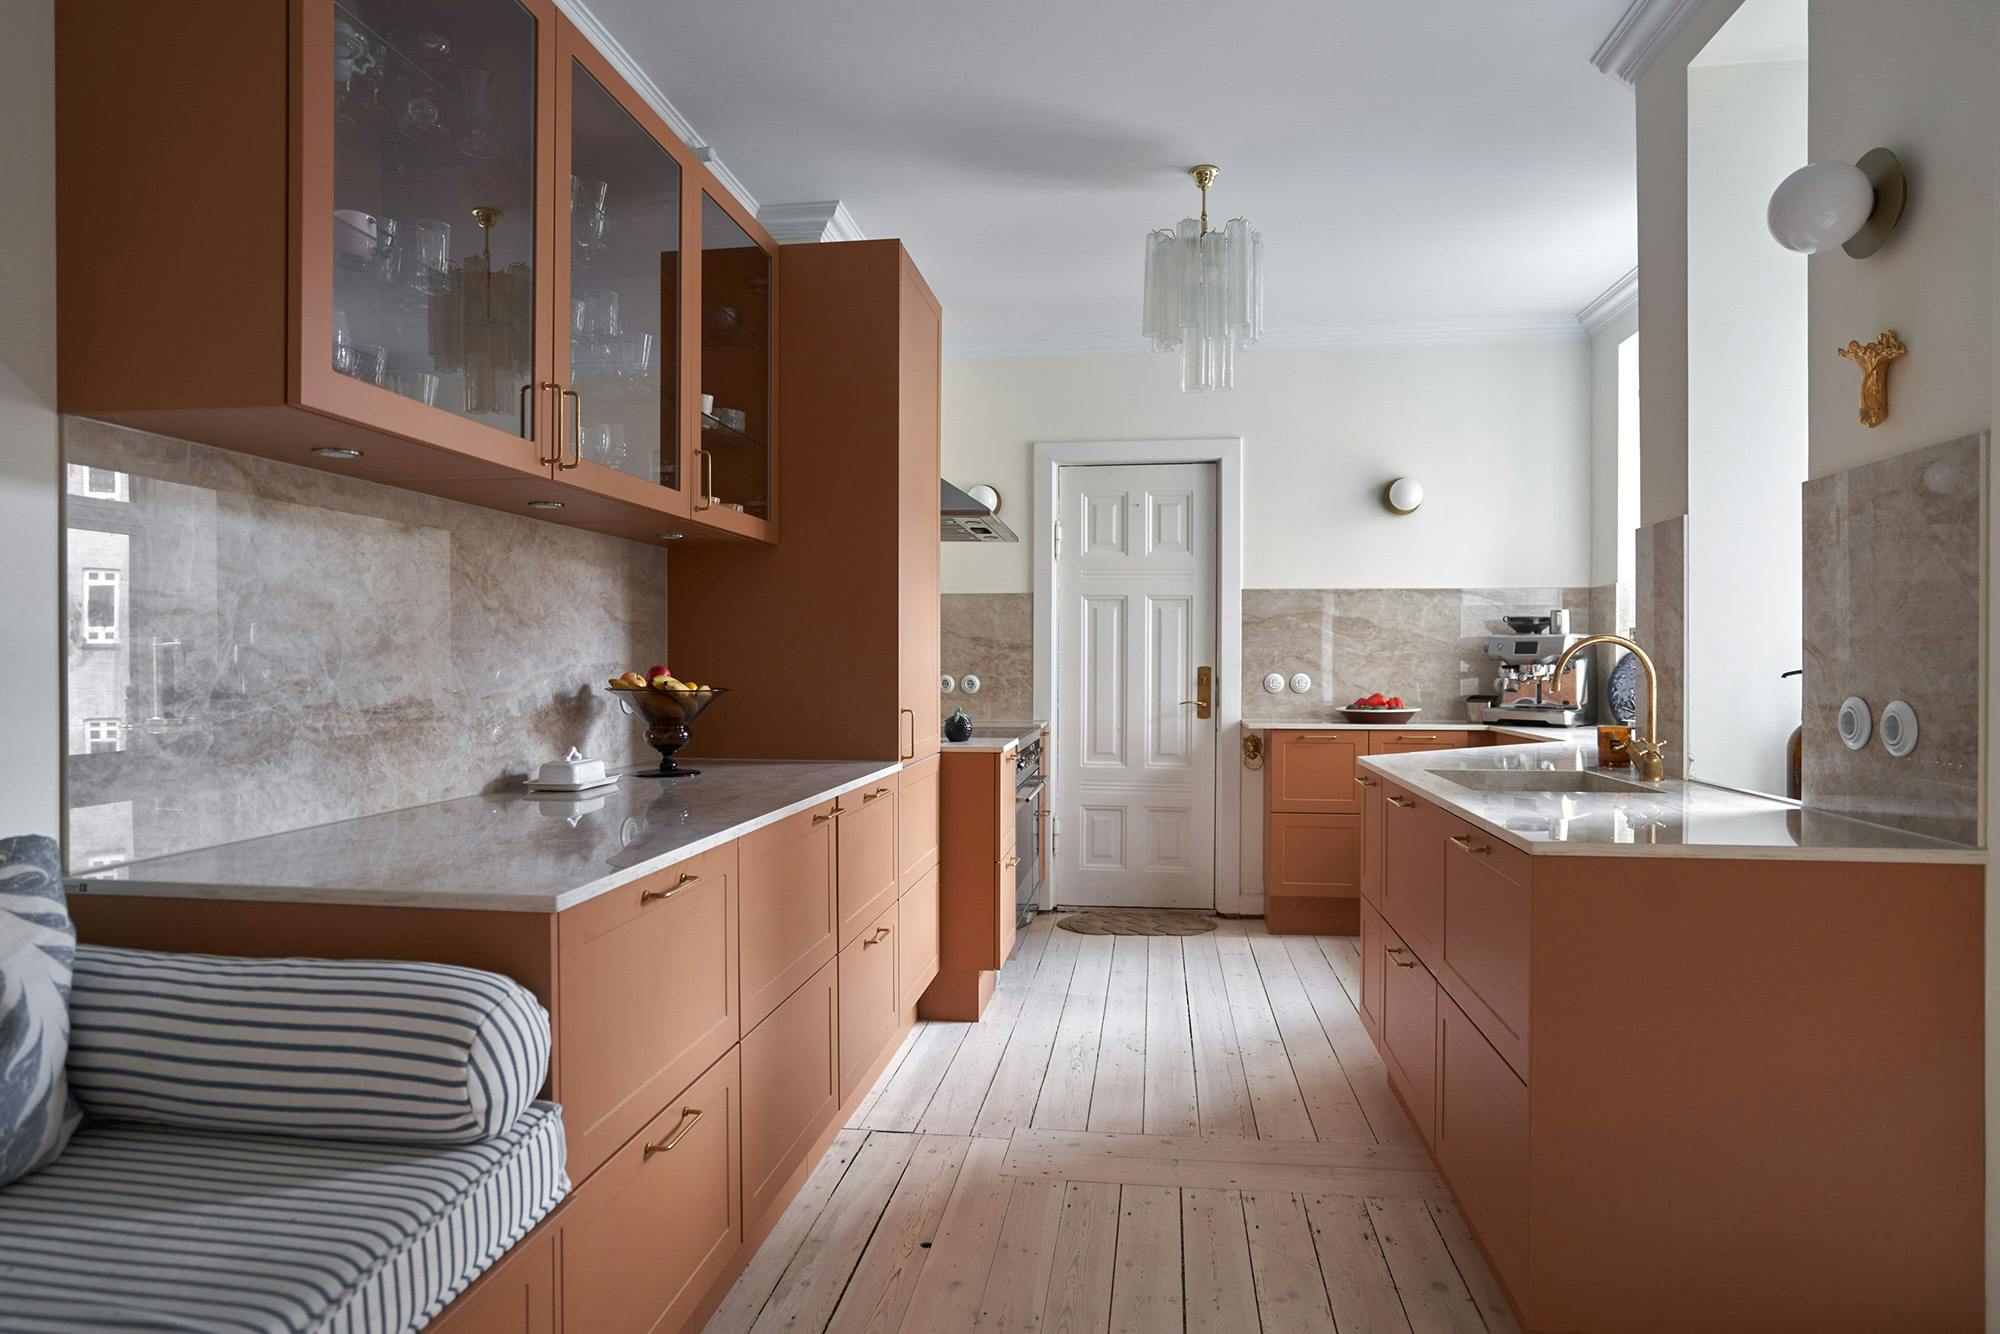 Numero immagine 37 della sezione corrente di The kitchen of blogger Vilja Vehkaoja's new log cabin has beautiful Dekton Helena countertops di Cosentino Italia